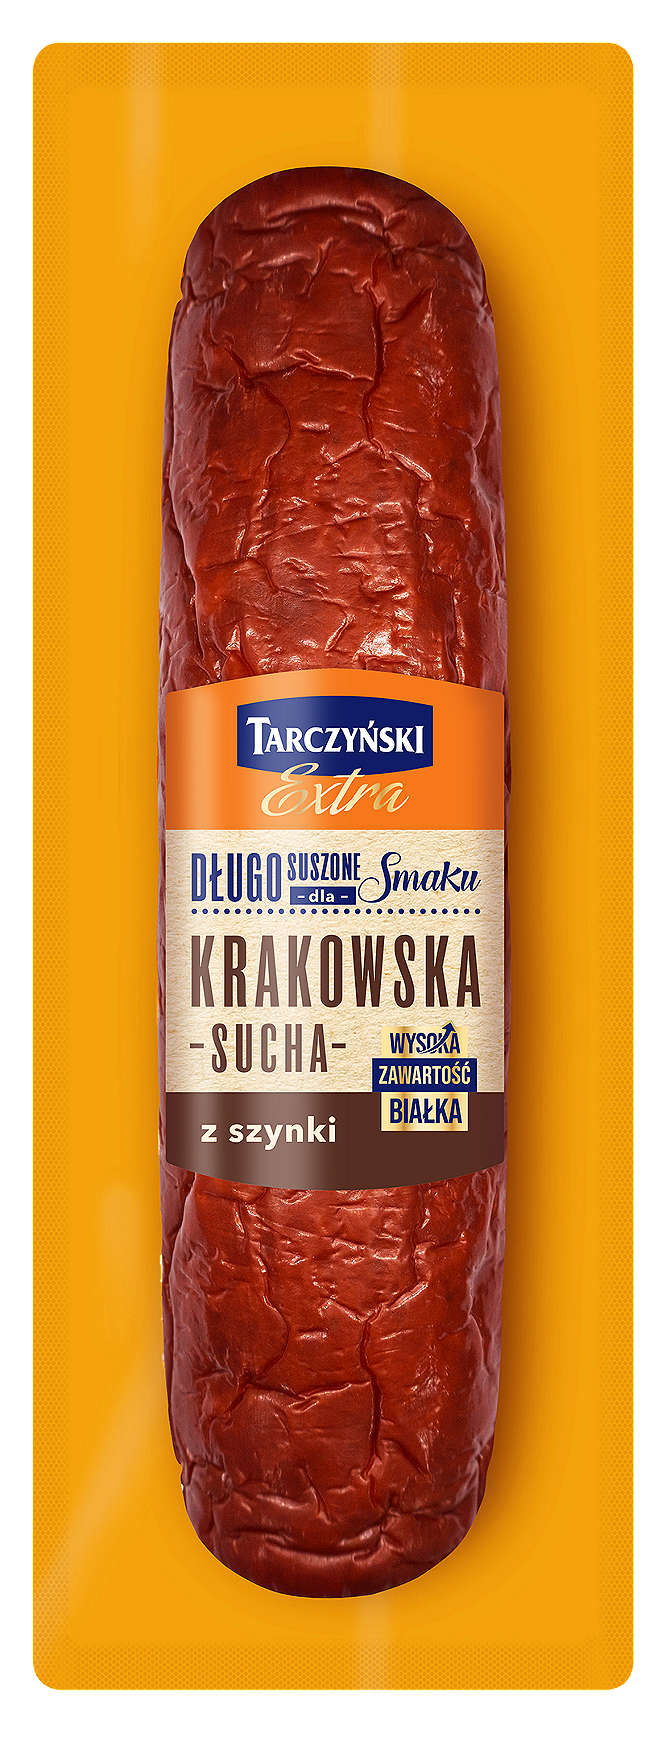 Zdjęcie oferty Tarczyński Krakowska sucha z szynki